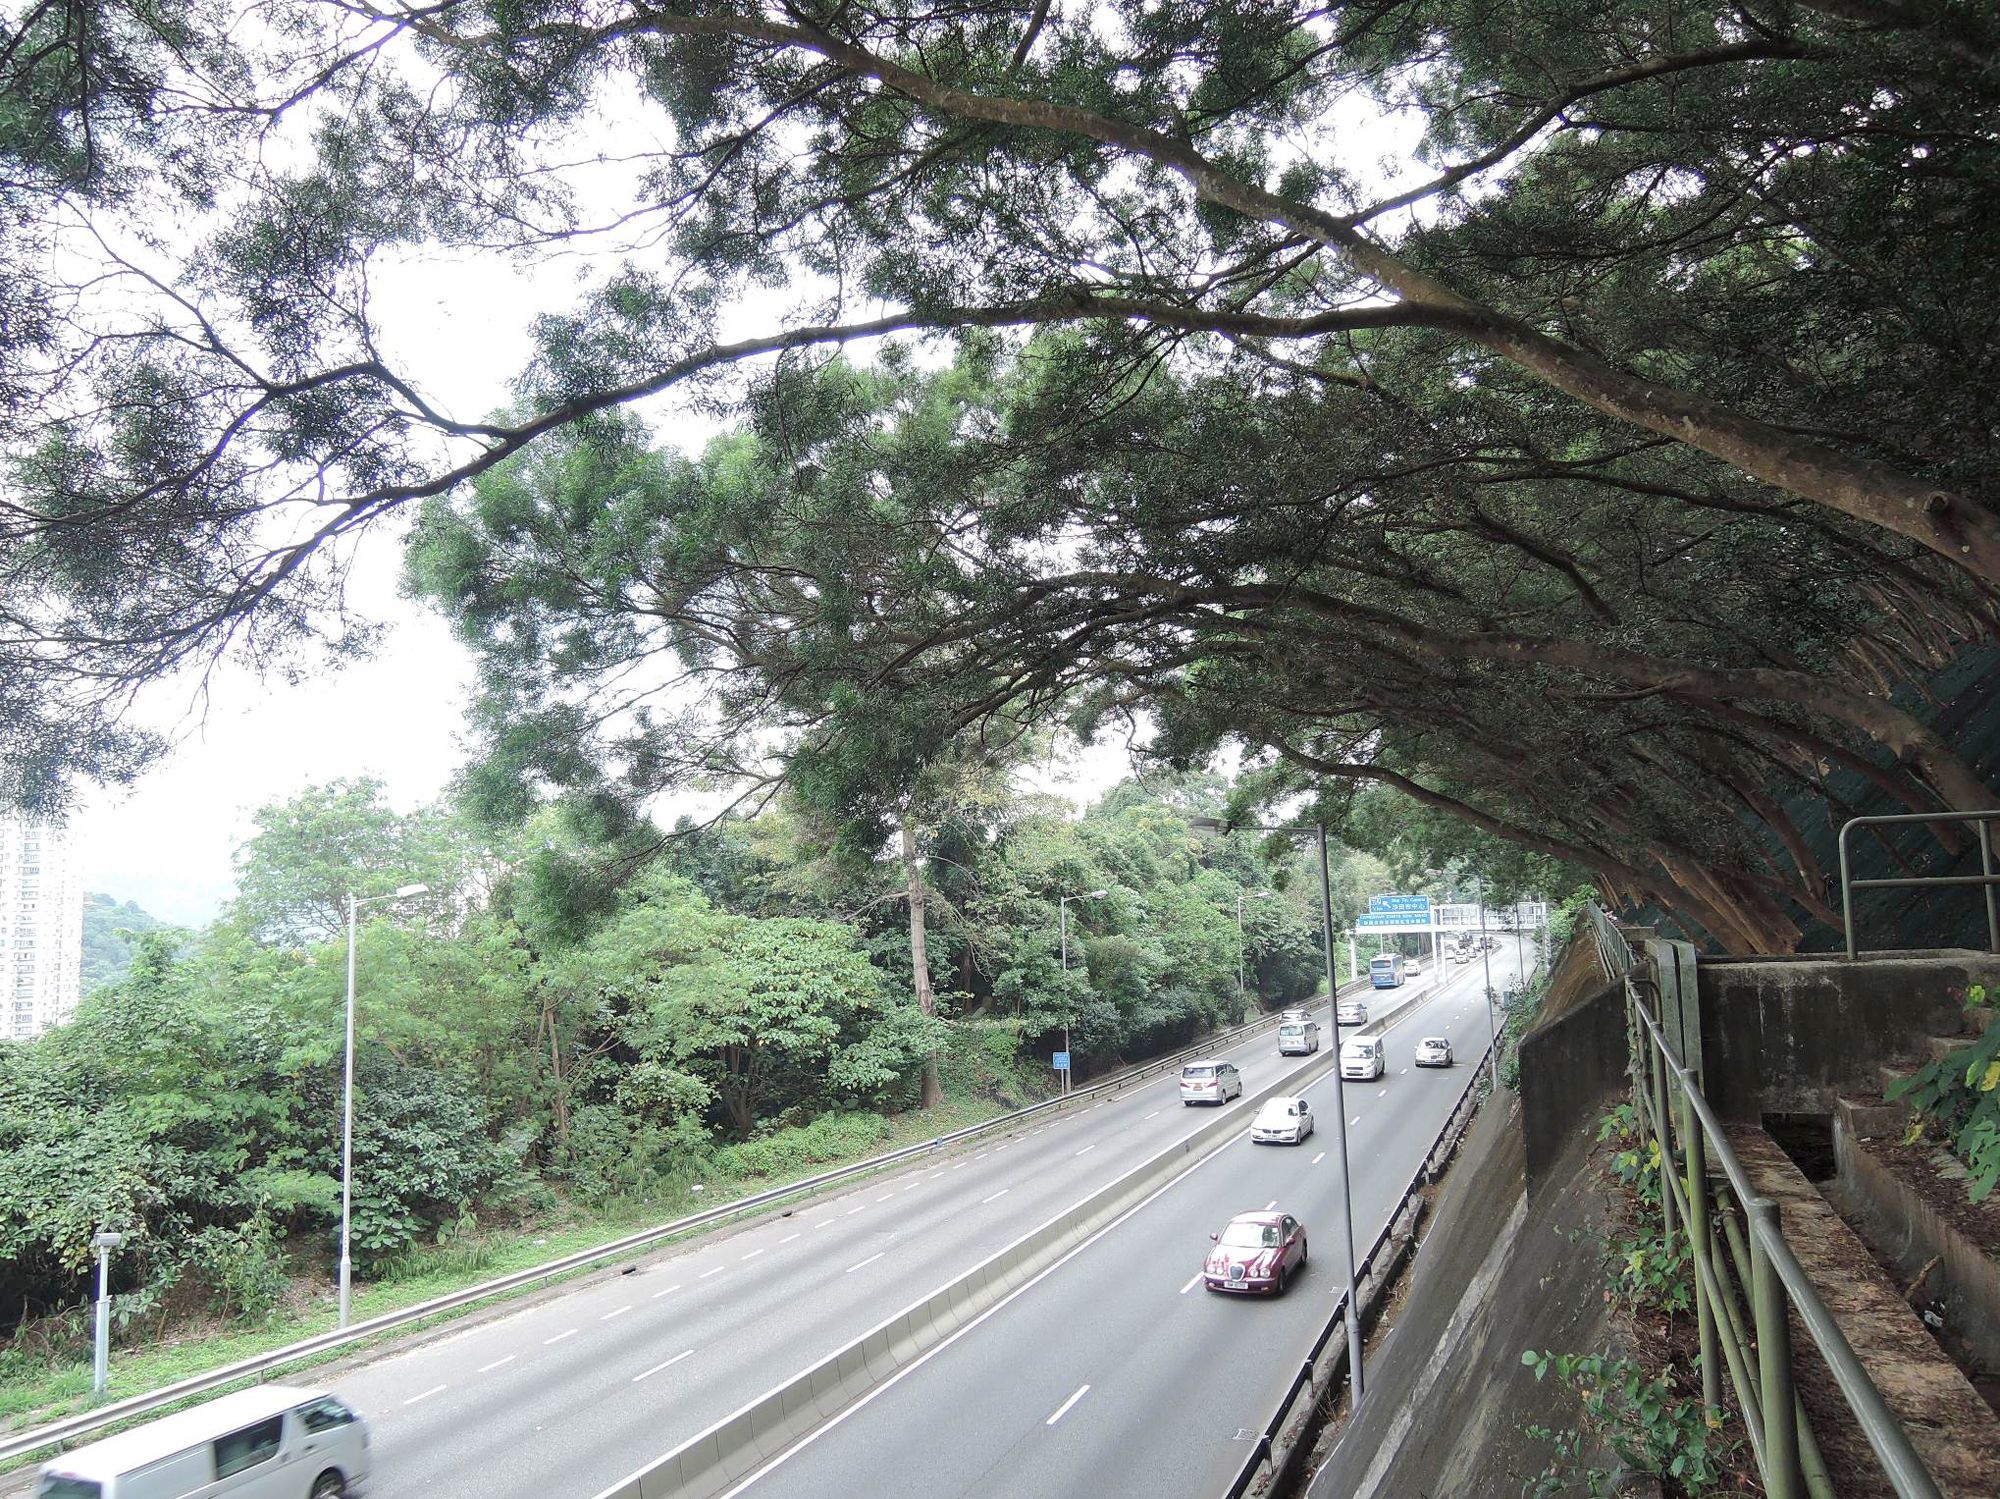 香港在早期植林时，为了防止水土流失，引入了一些外来树木物种，例如图中的台湾相思。